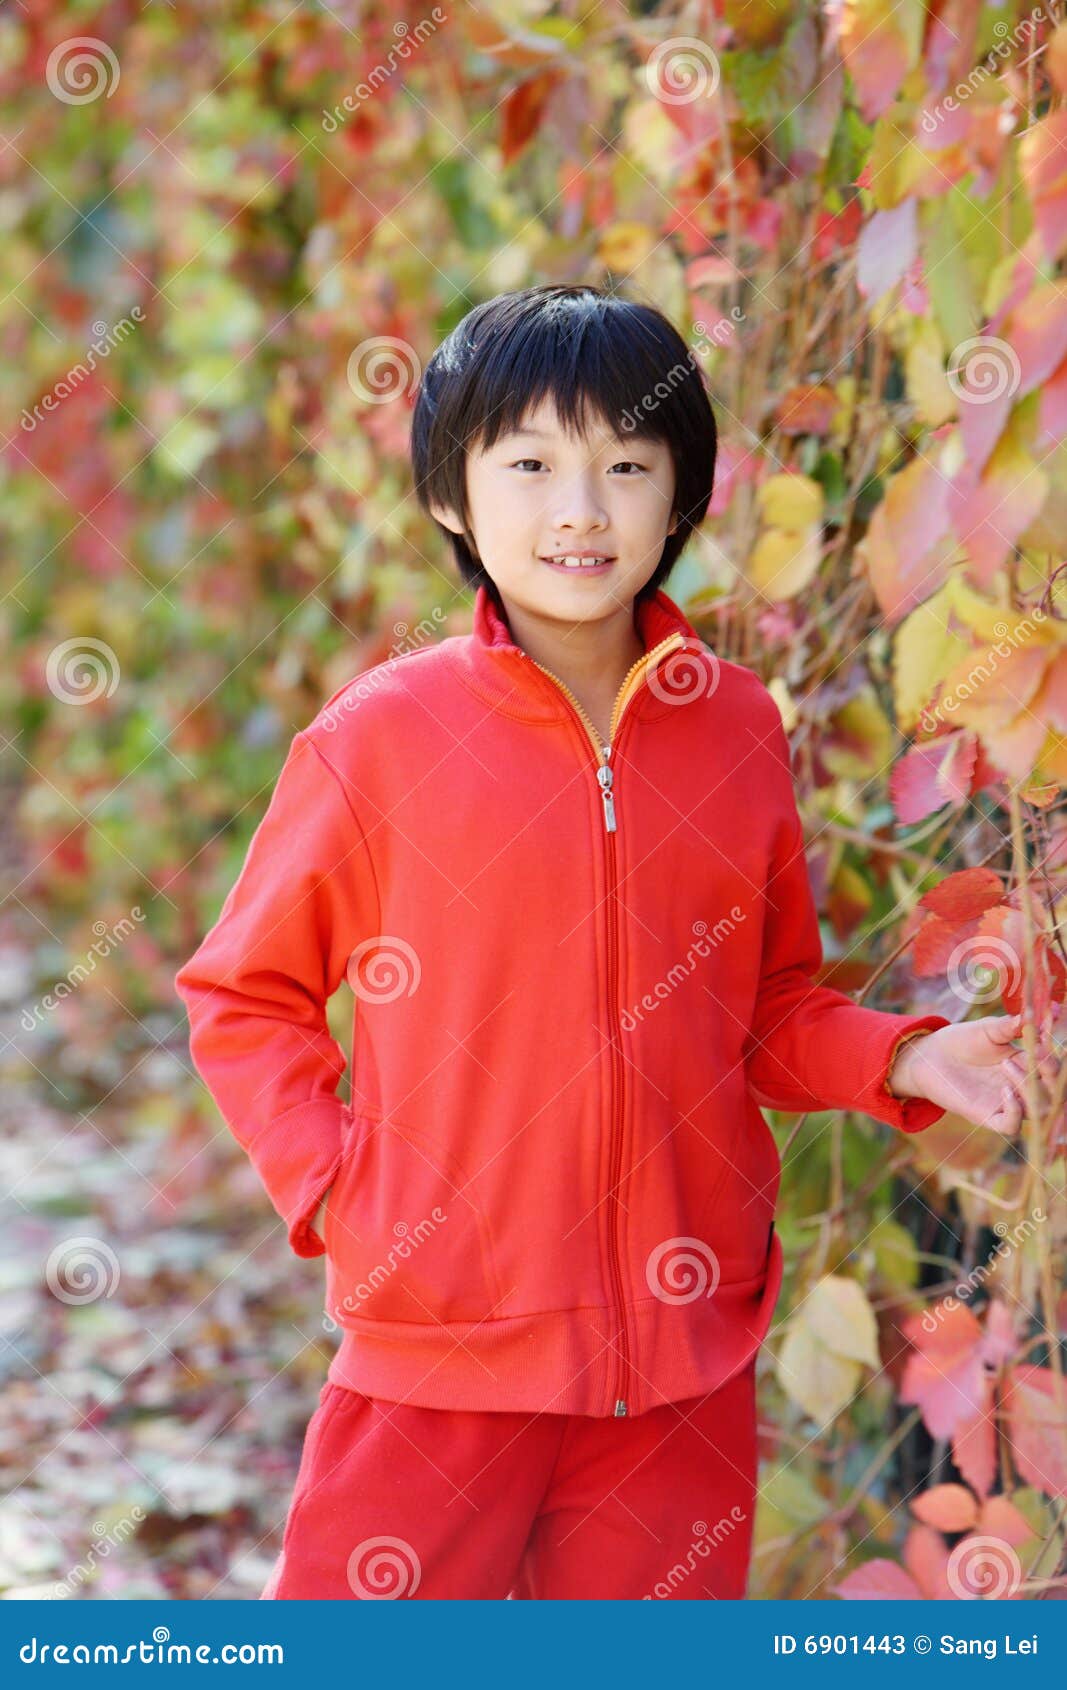 ventilador Carne de cordero Hobart Niños chinos imagen de archivo. Imagen de encantador, belleza - 6901443